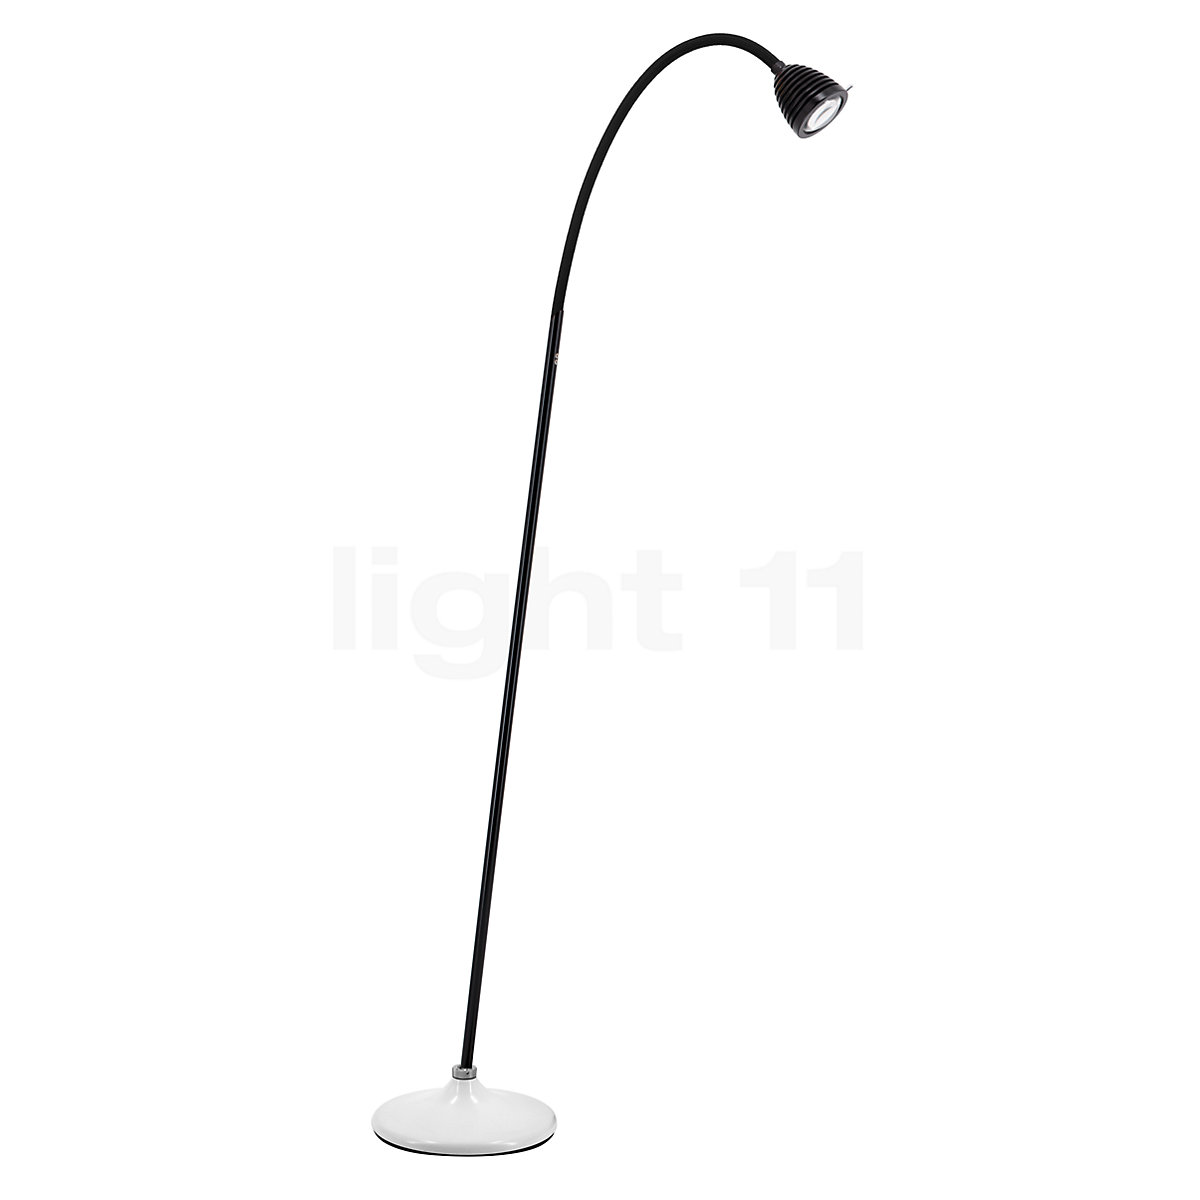 Athene Grande puissante lampe de bureau LED flexible noir: Less n More,  luminaire design fabriqué en Allemagne - Réf. 12060310 - mobile